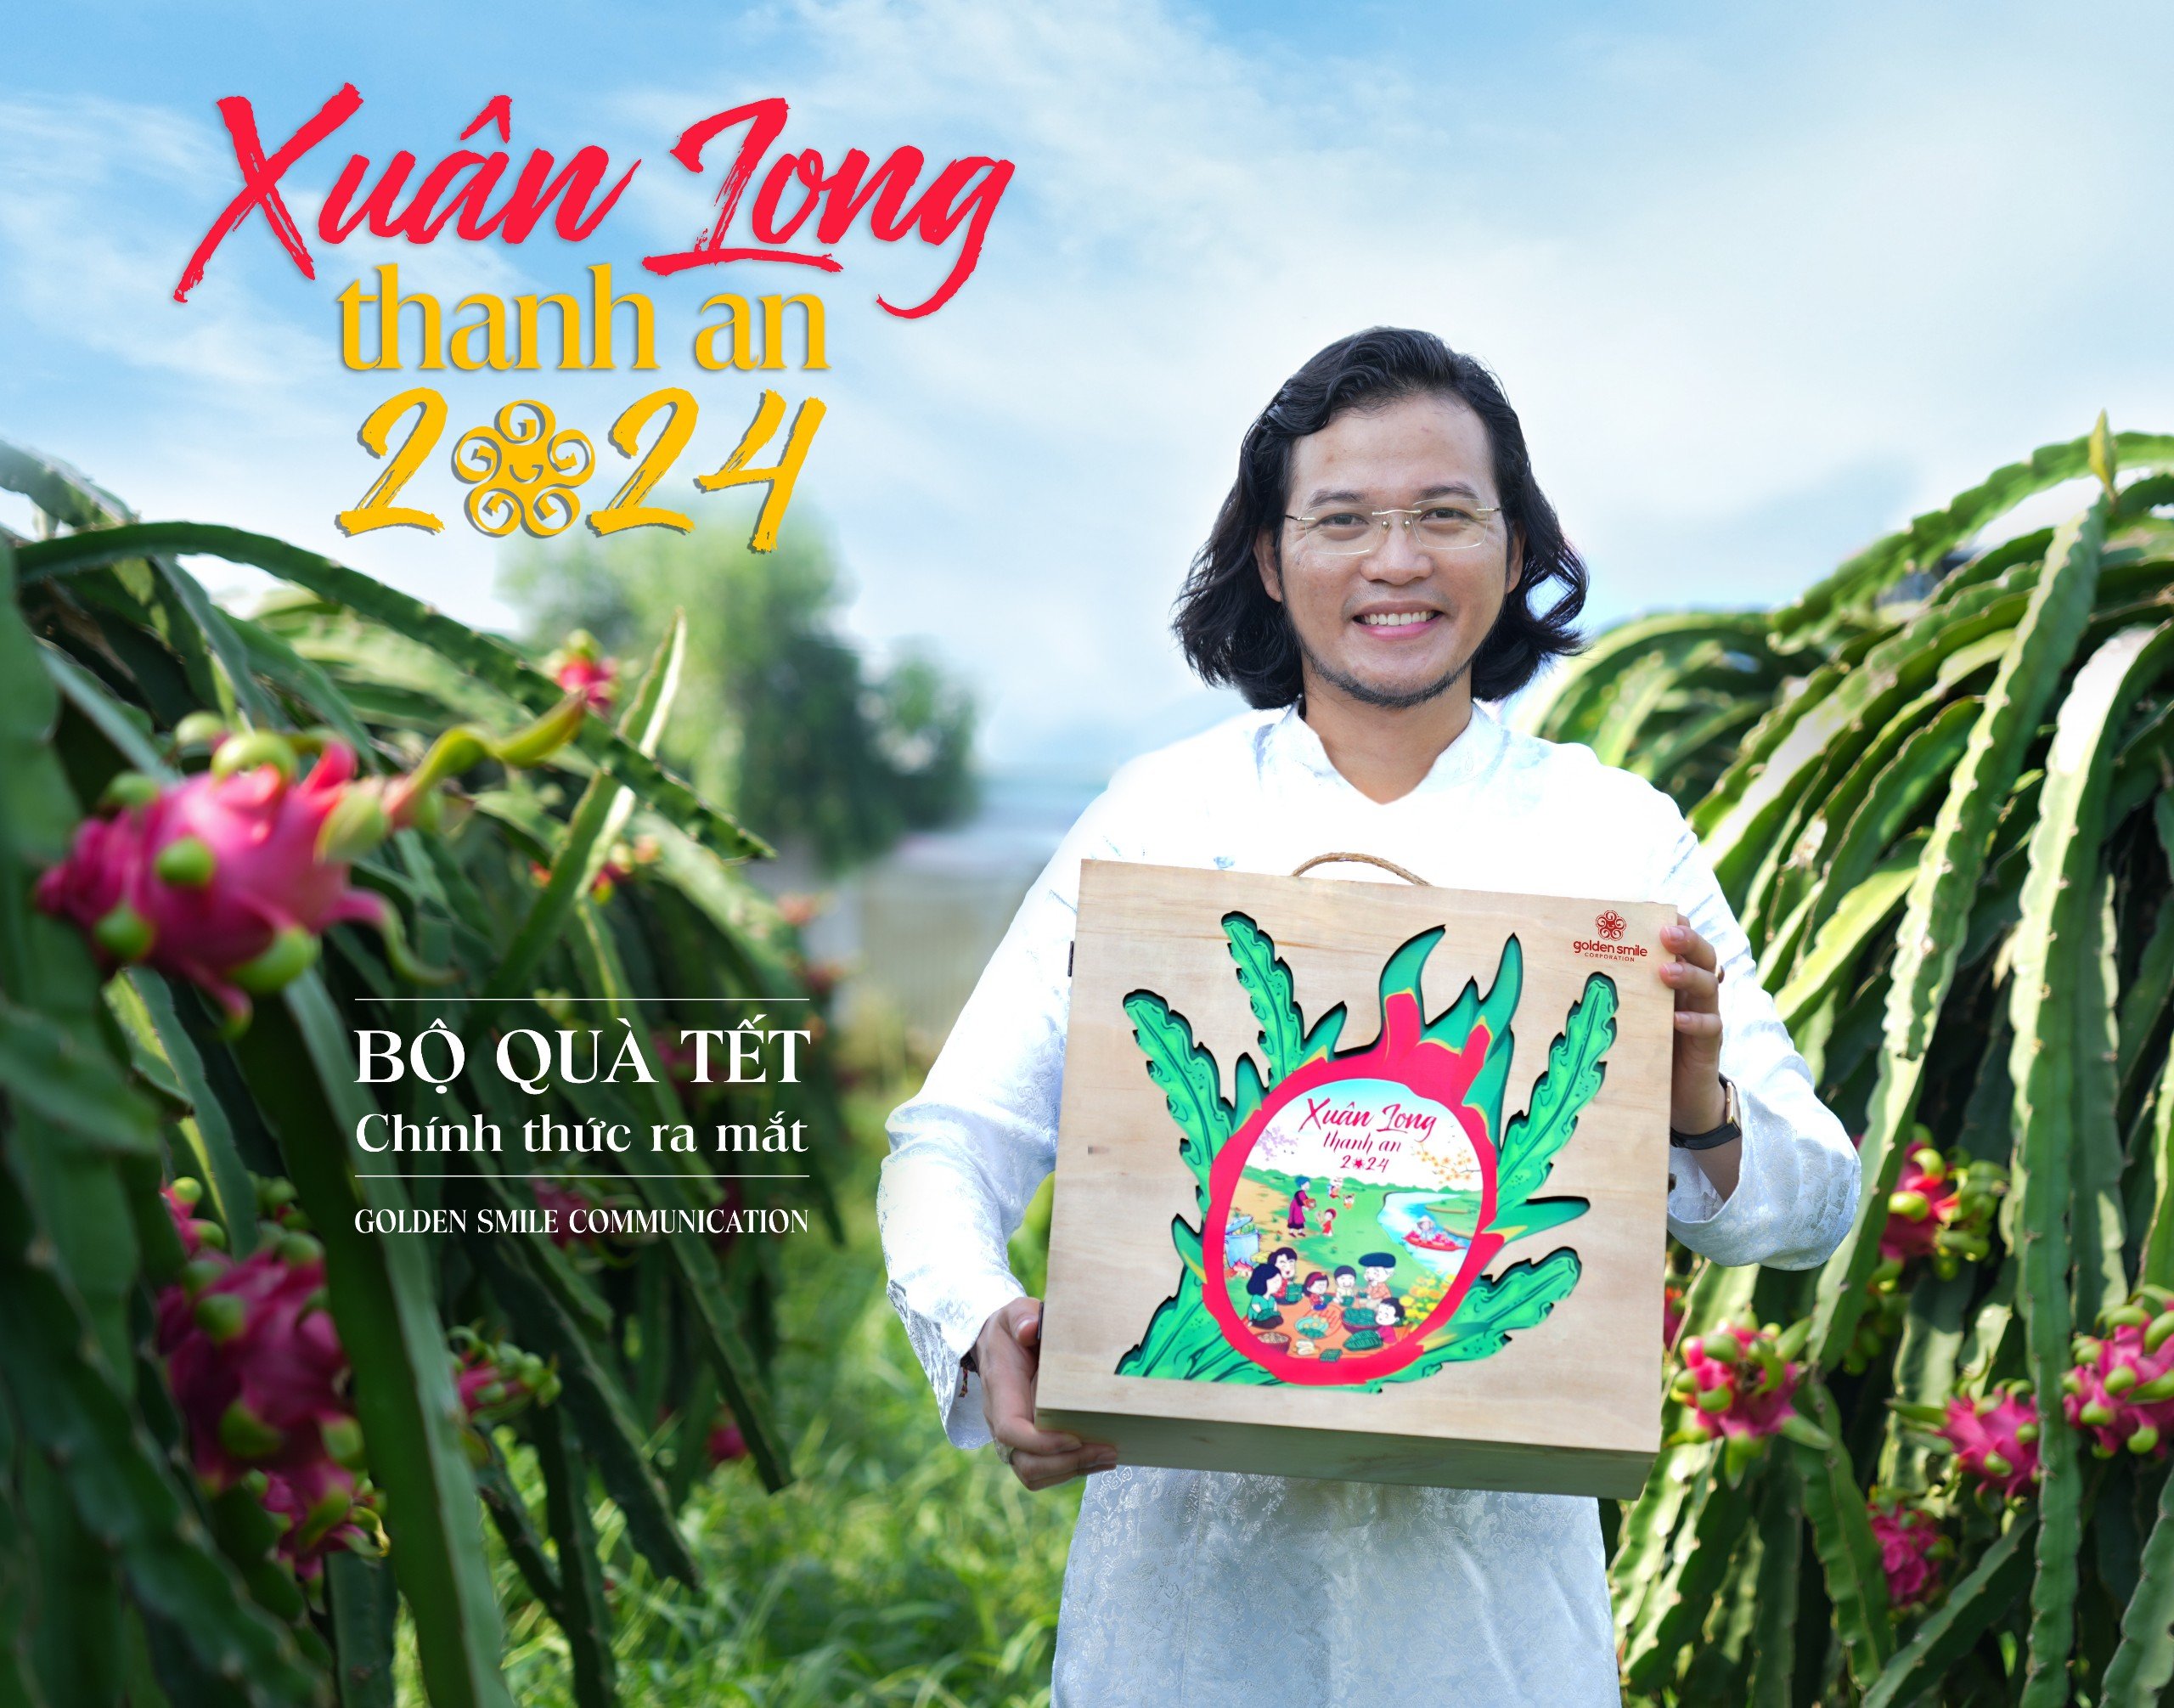 Ra mắt bộ quà tết "Xuân Long Thanh An" 2024